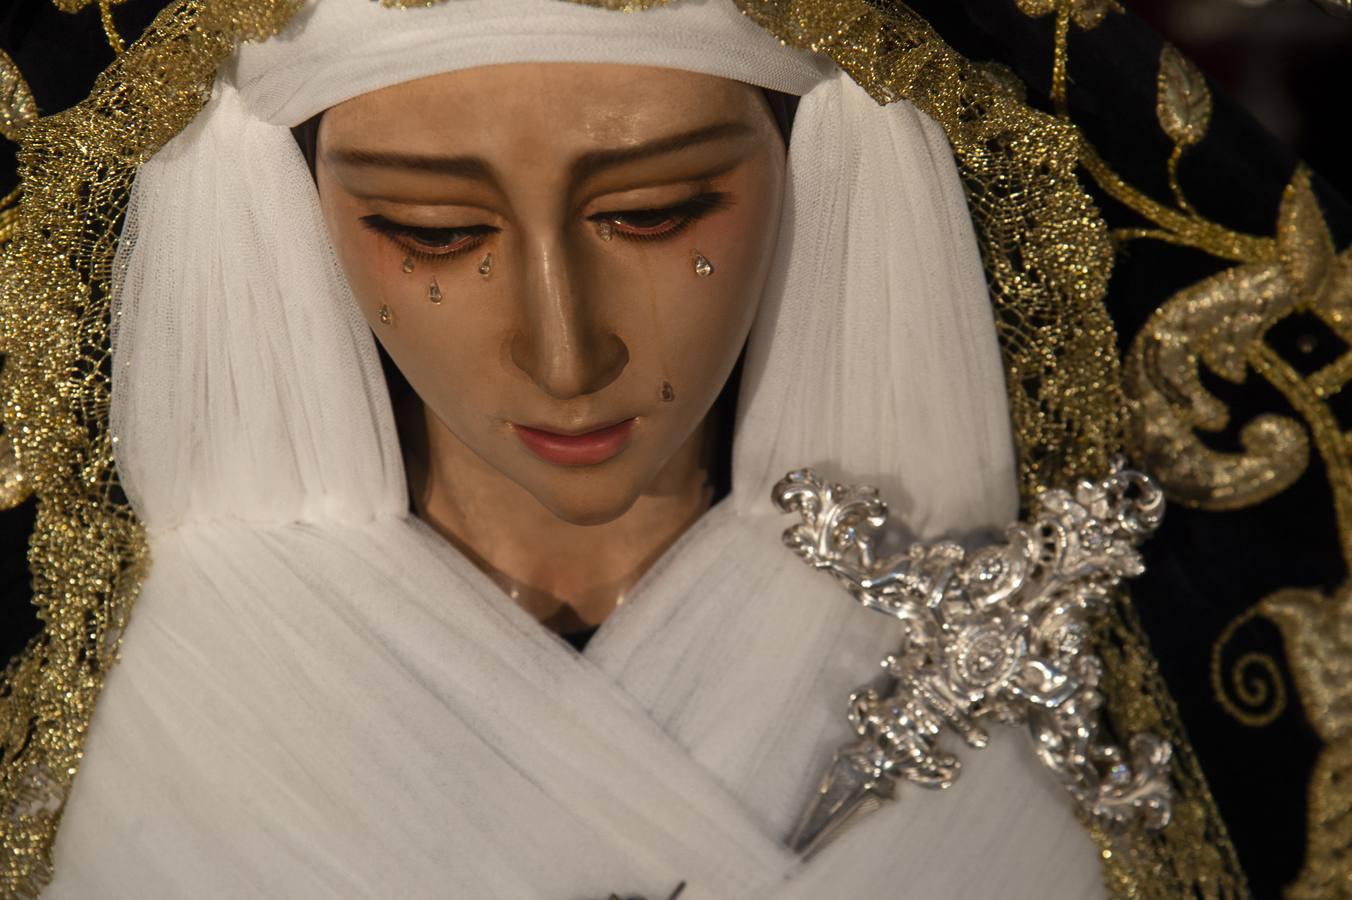 La Virgen de los Dolores de San José Obrero